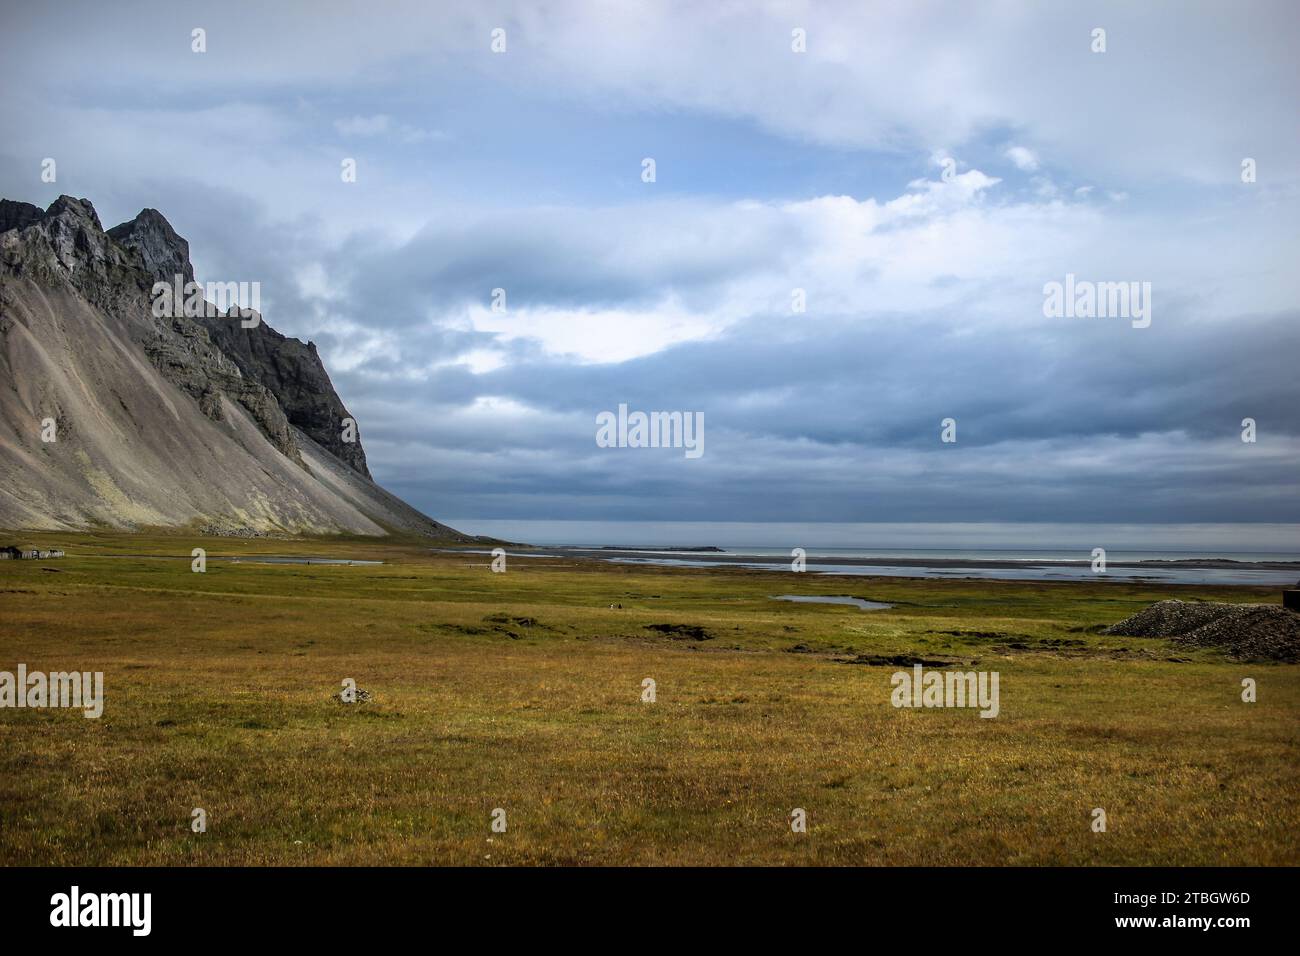 Entdecken Sie die ungezähmte Schönheit Islands in einem einzigen Rahmen. Lassen Sie sich von der atemberaubenden Symphonie der Natur verzaubern Stockfoto